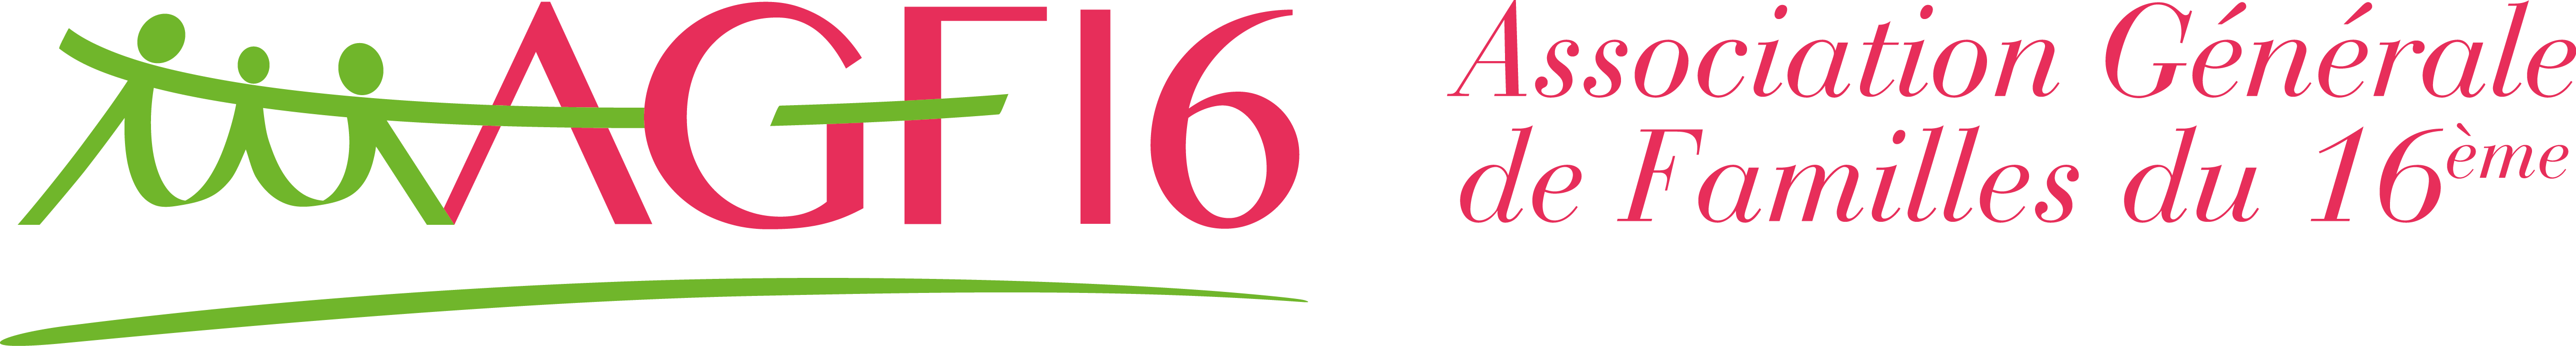 Association Générale de Familles du 16 ème (AGF16)